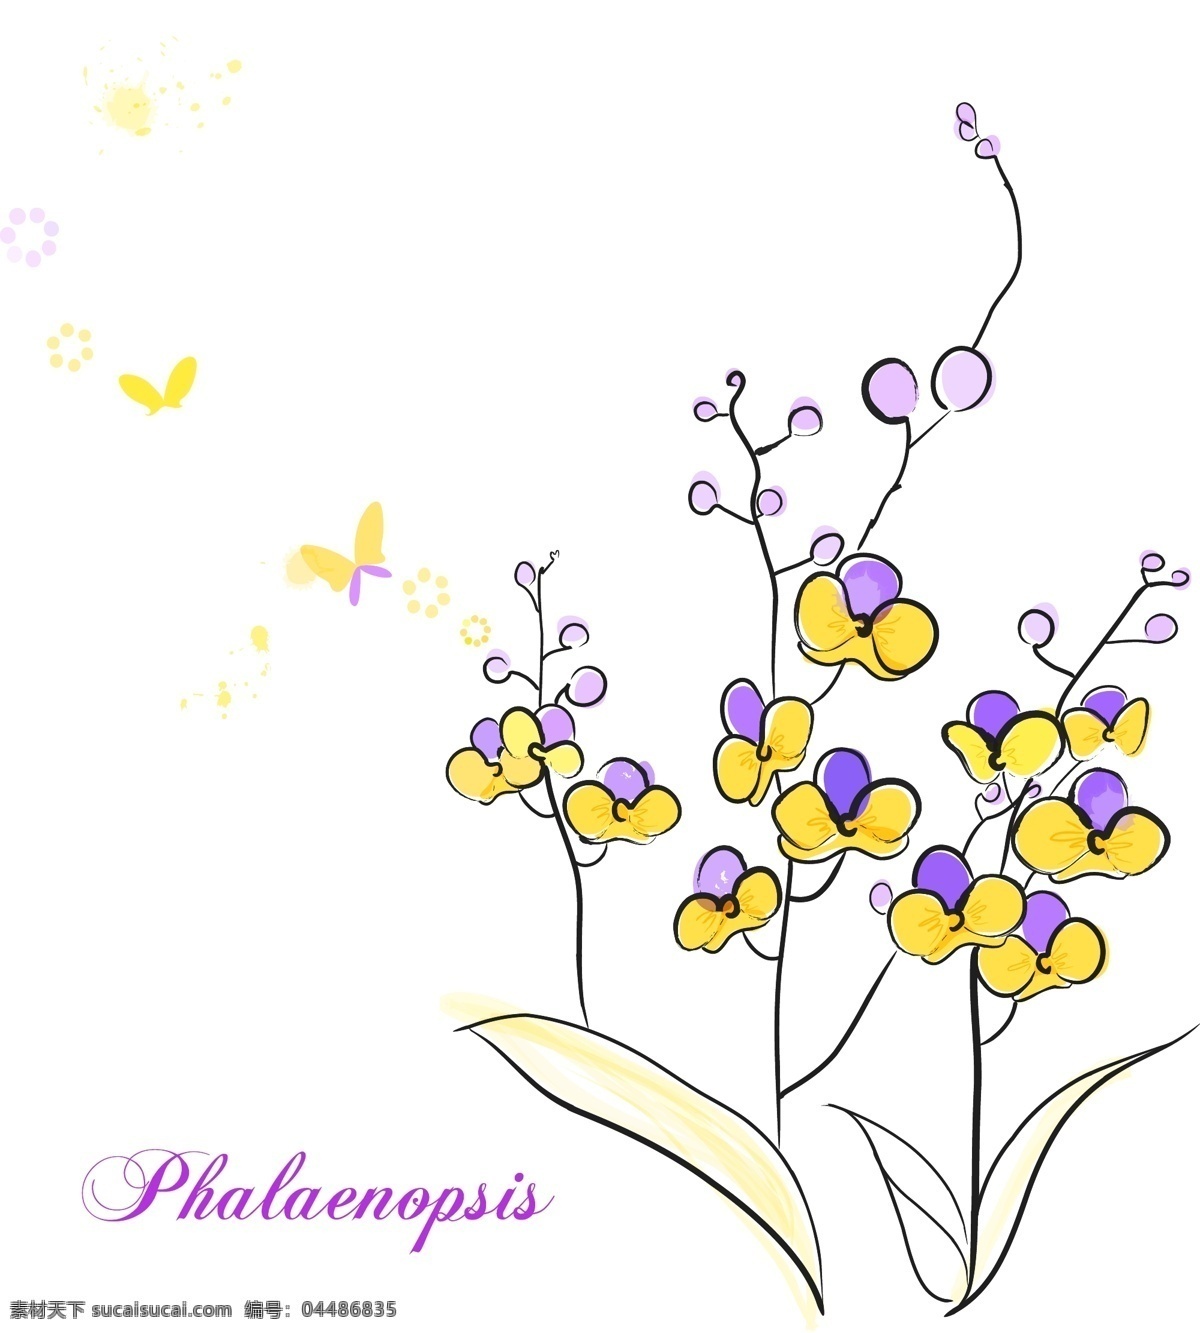 蝴蝶兰 花朵 花卉 手绘 素描 唯美 矢量图 花纹花边